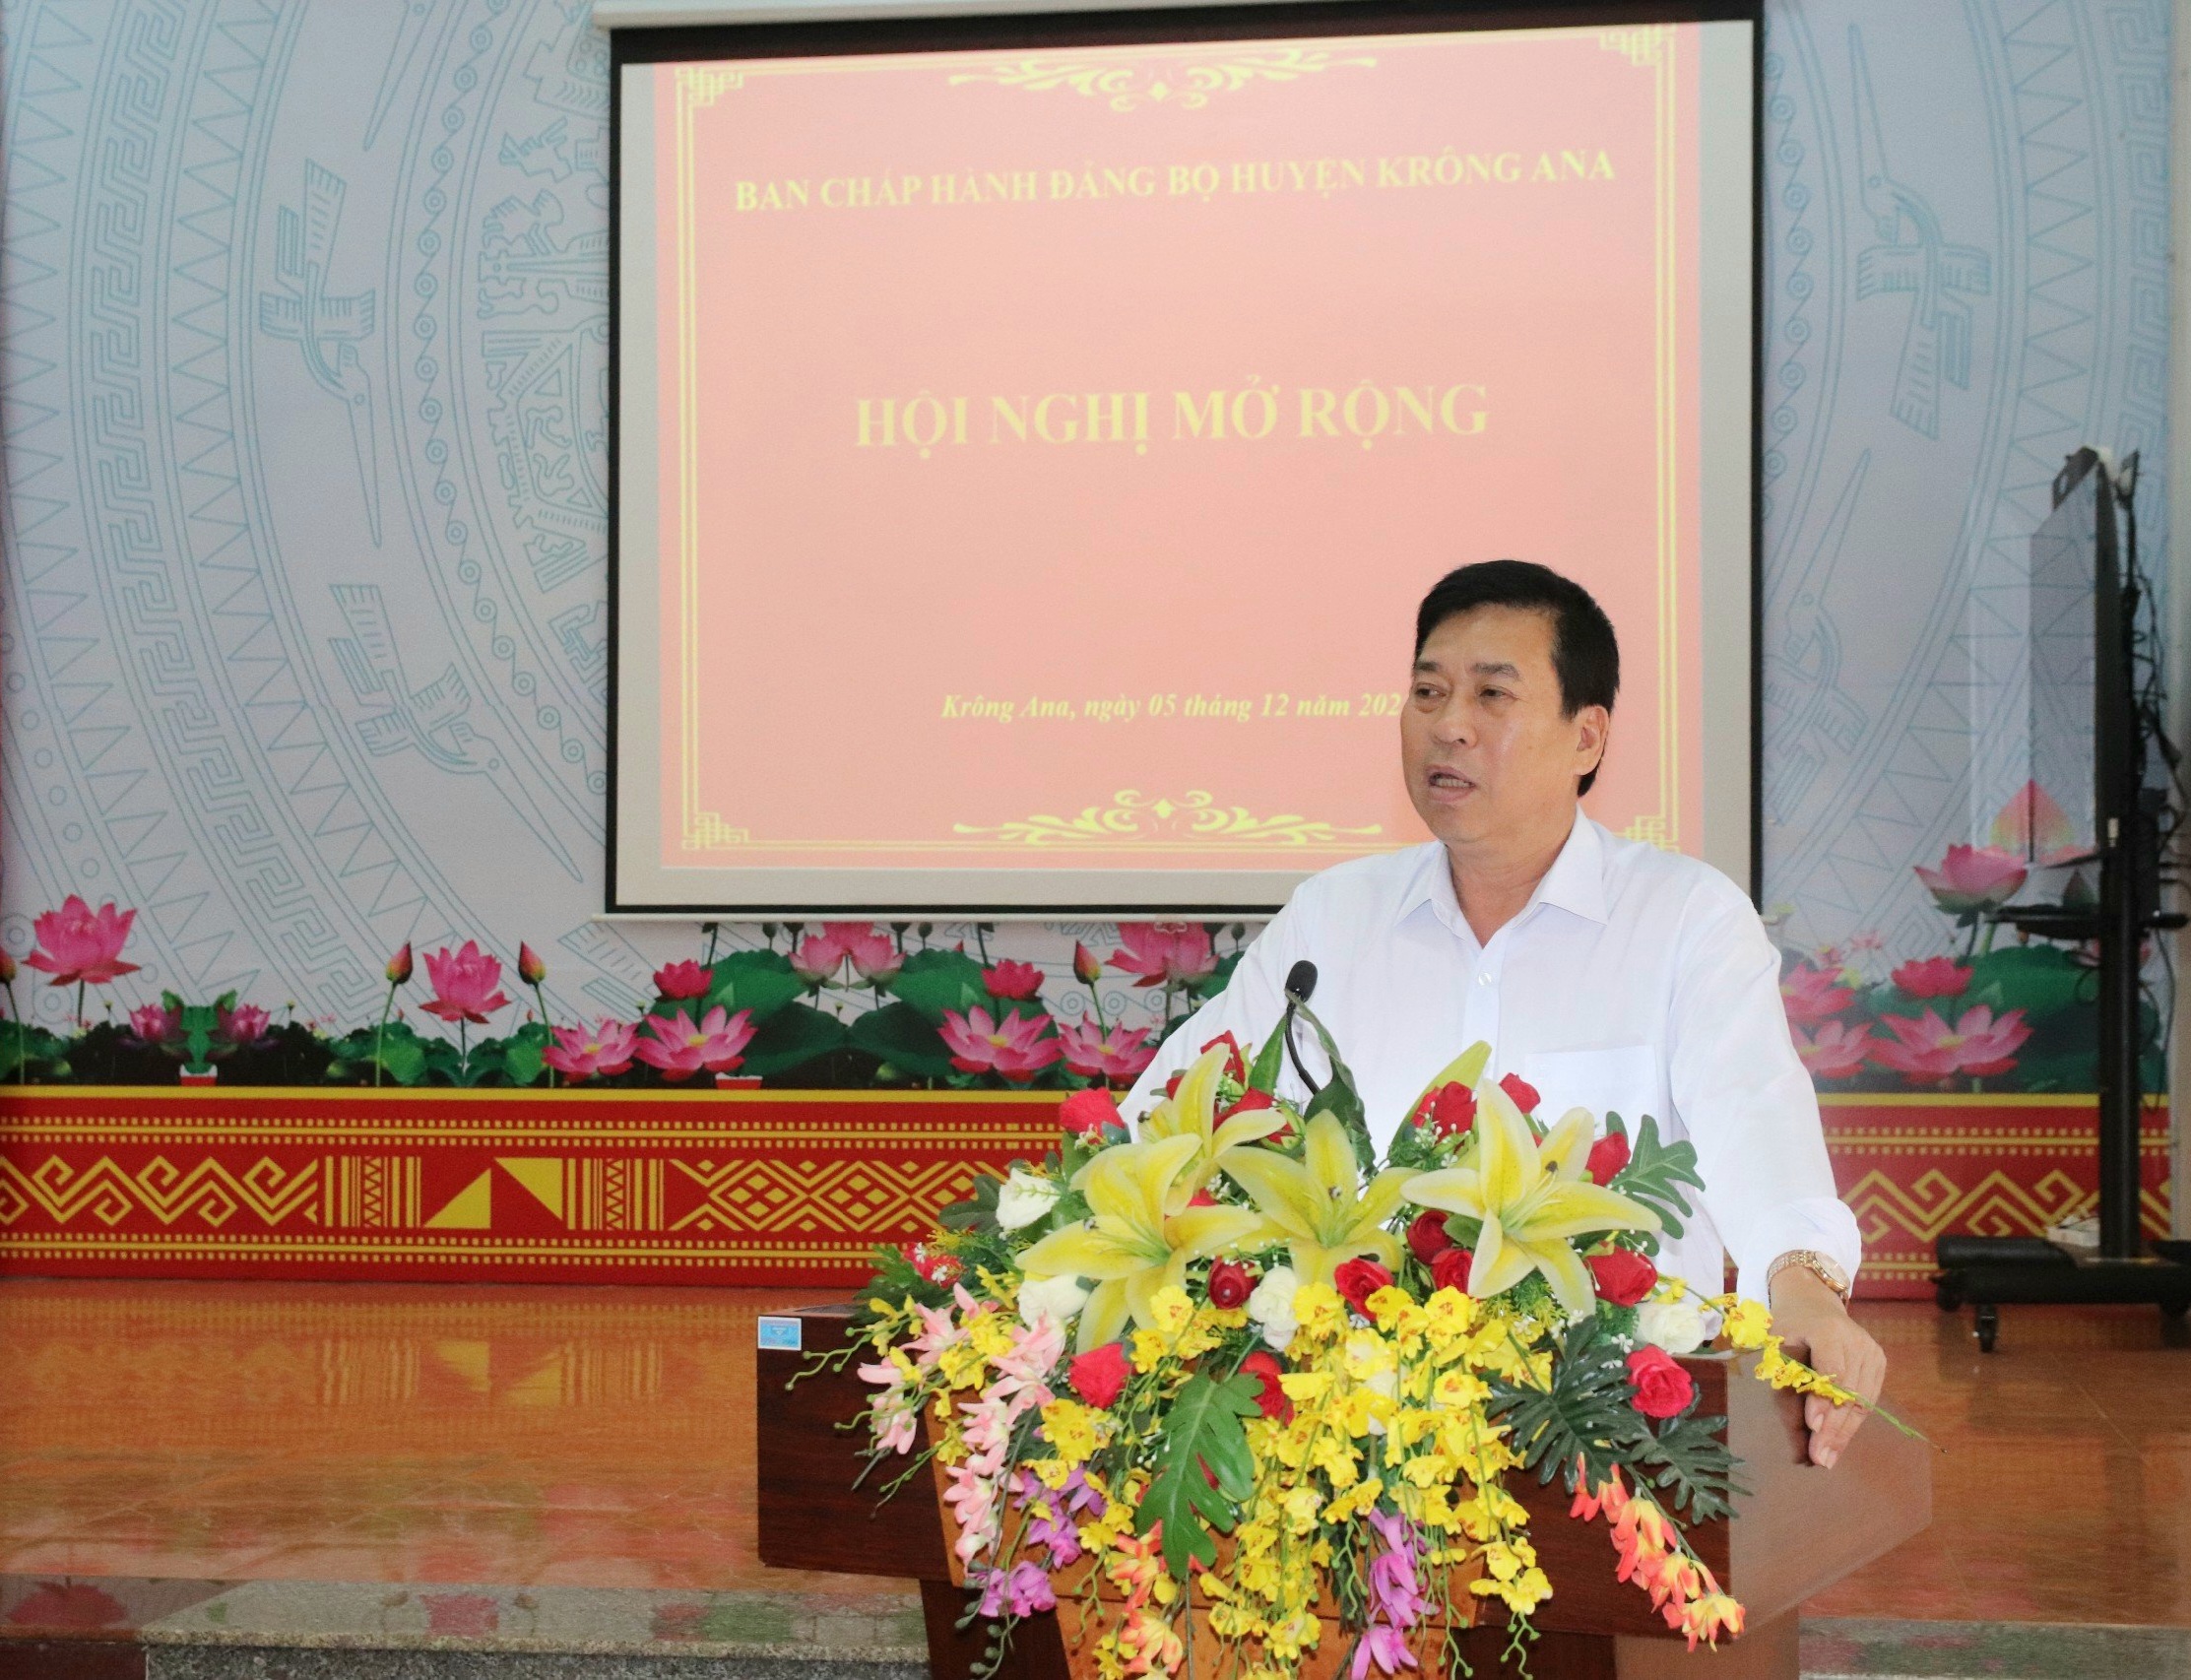 Hội nghị Ban Chấp hành Đảng bộ huyện Krông Ana (mở rộng)